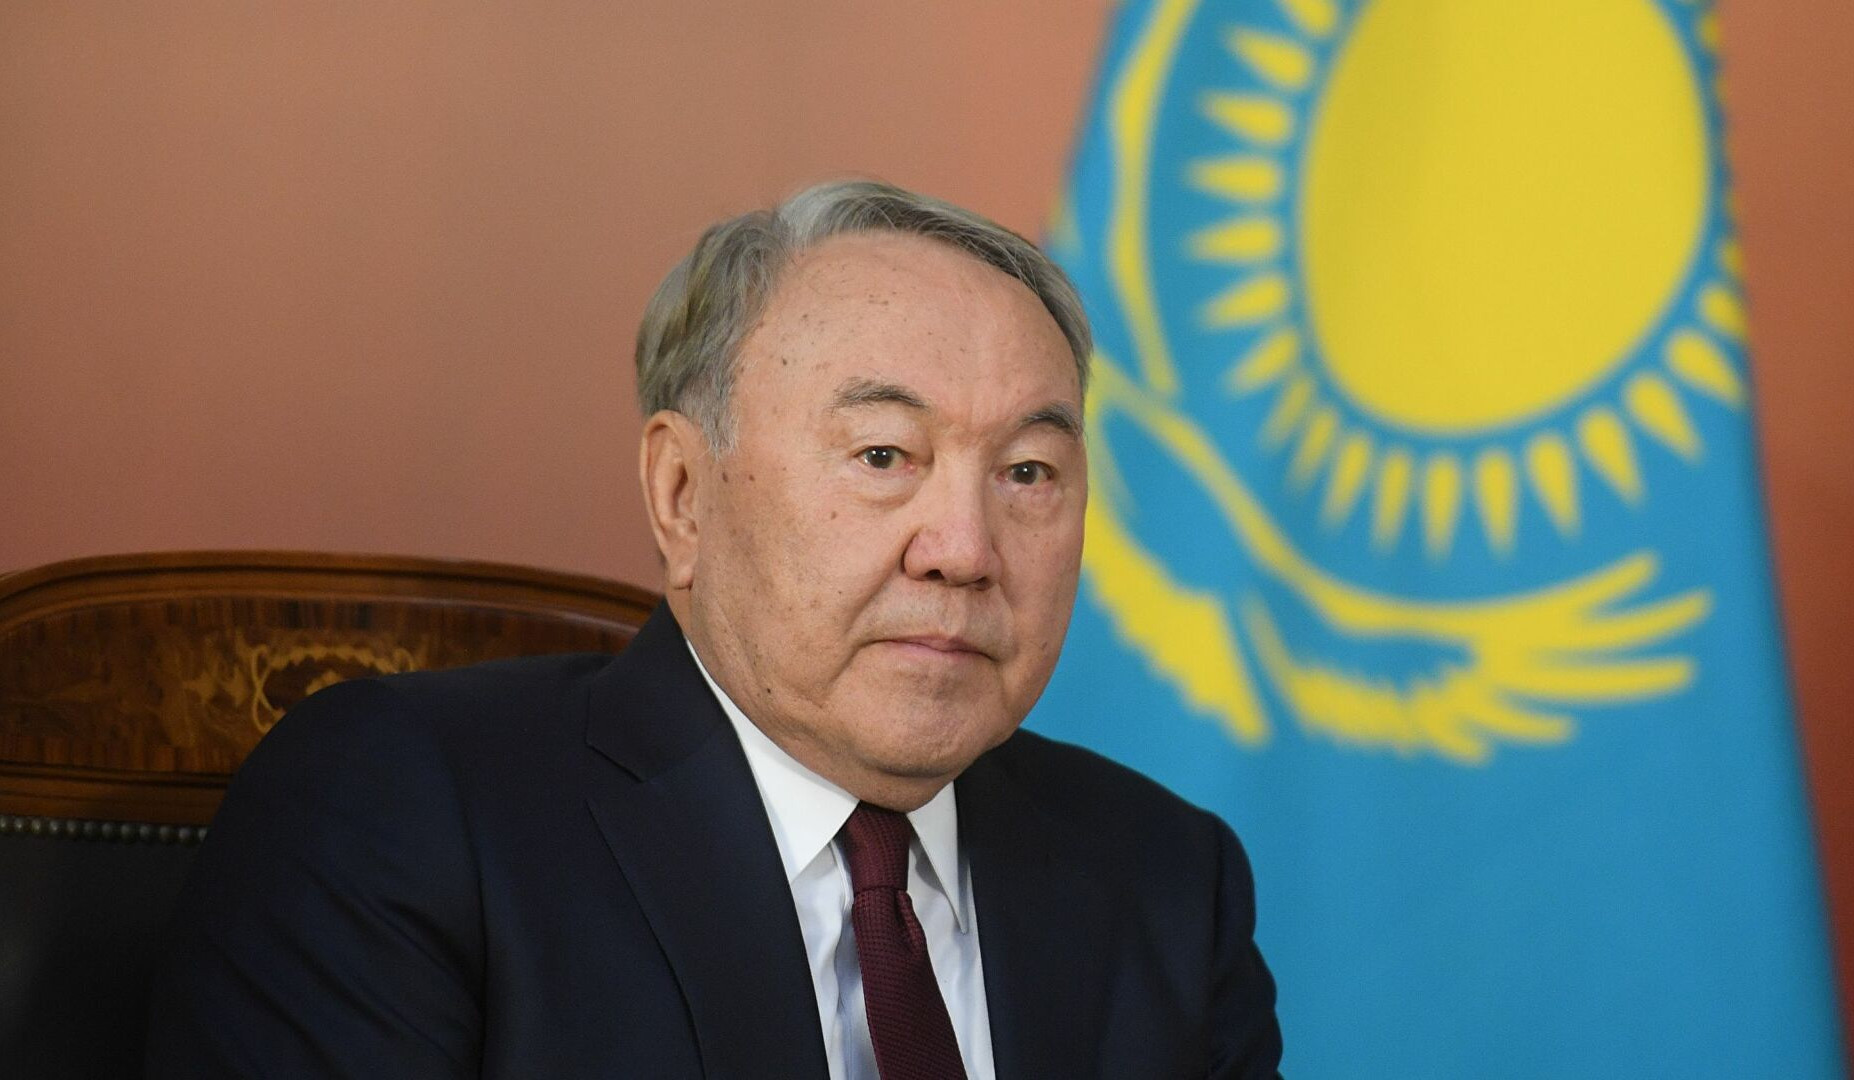 Ղազախստանի խորհրդարանի ստորին պալատը կողմ է քվեարկել Նազարբաևին ցմահ շնորհված պաշտոններից զրկելուն